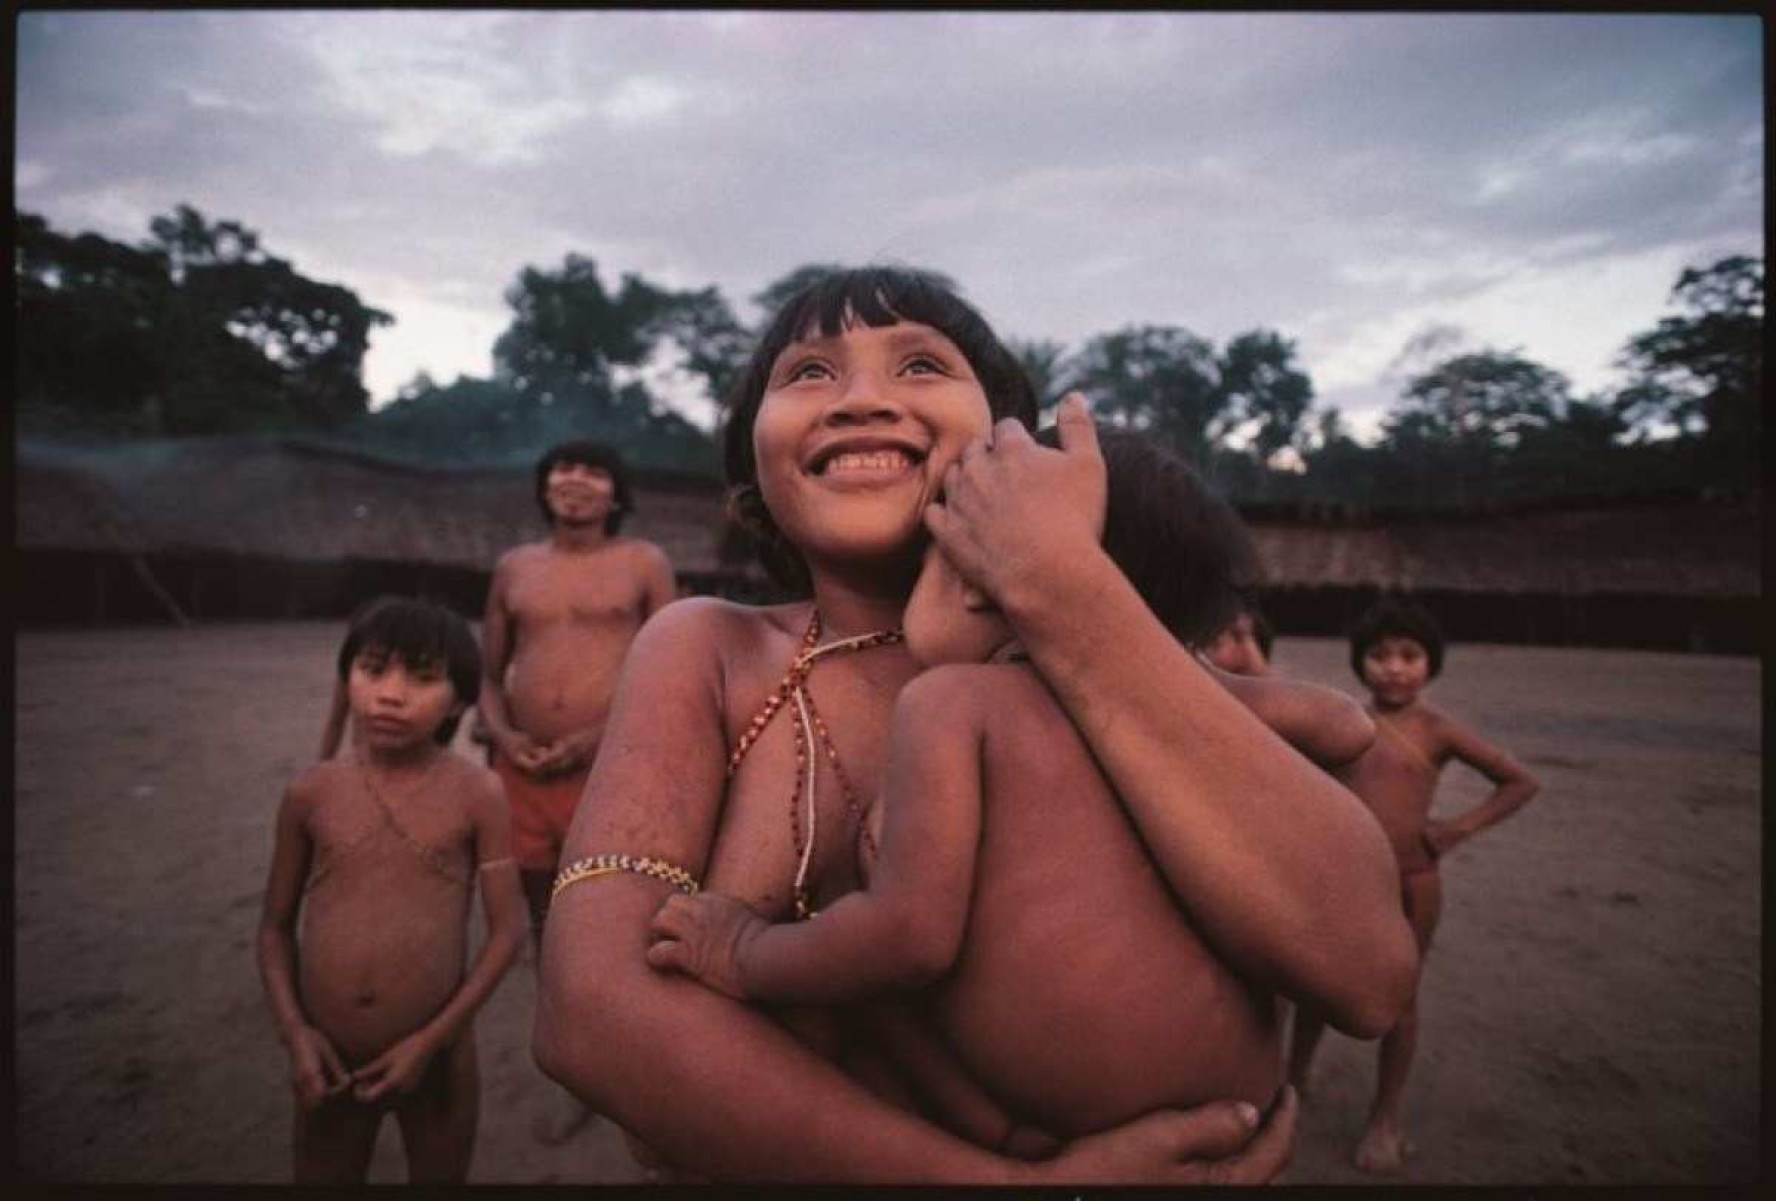 Fotos do japonês Hiromi Nagafura na exposição Hiromi Nagakura até a Amazônia com Ailton Krenak , em cartaz no CCBB